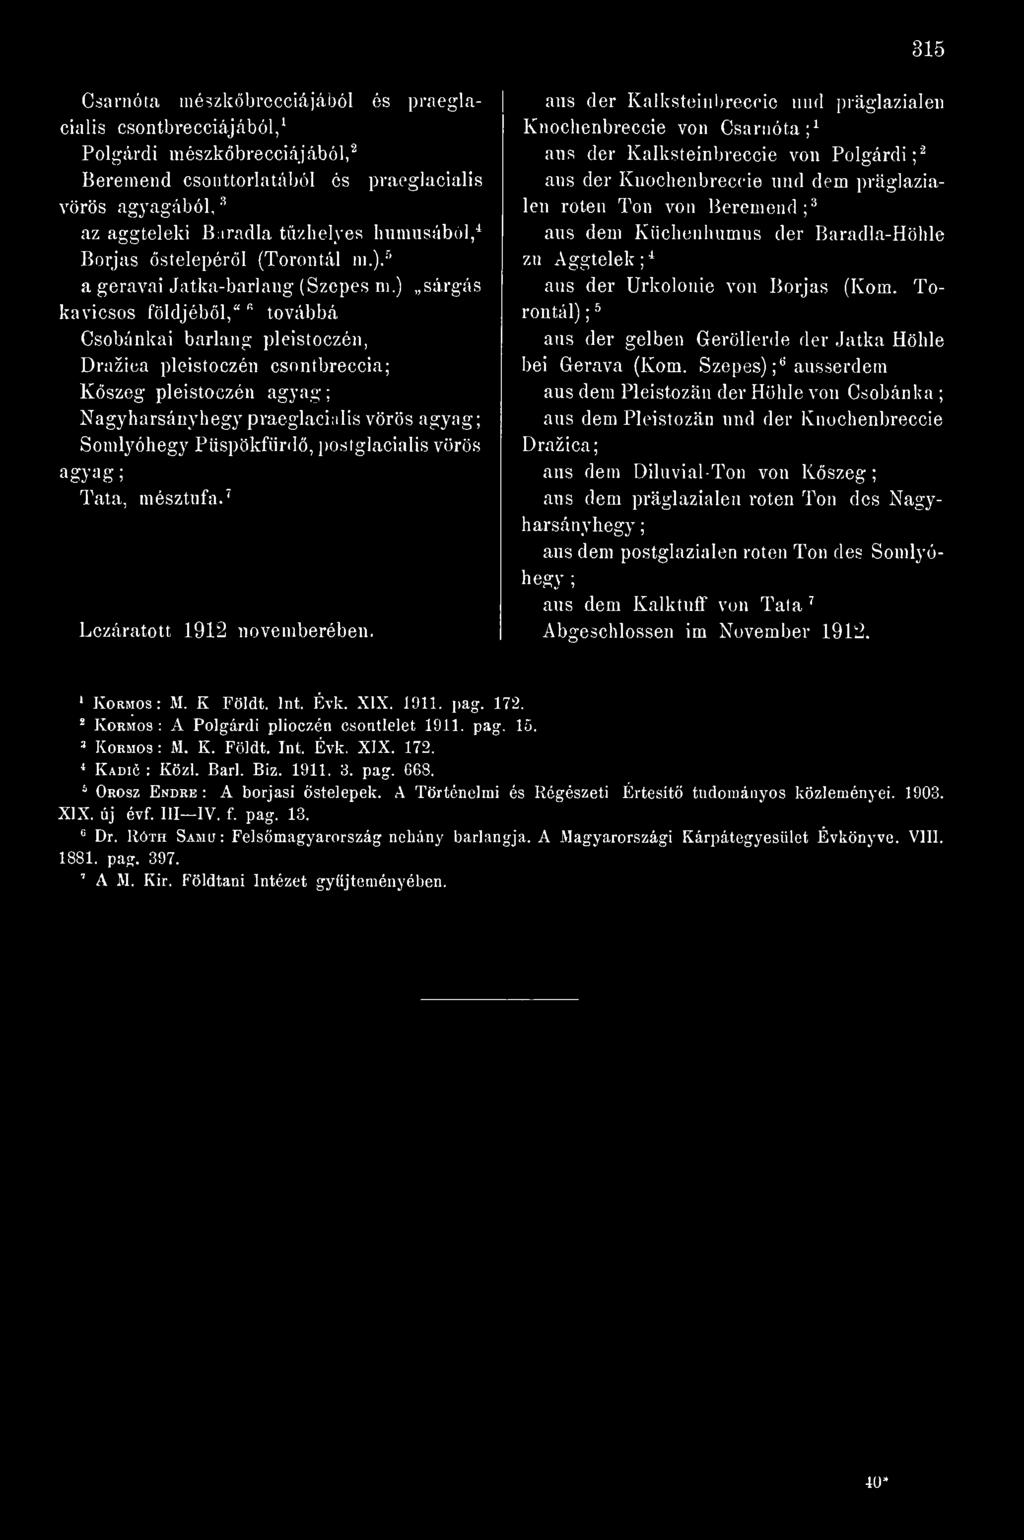 posiglacialis vörös agyag ; Tata, mésztnfa.' Lezáratott 1912 novemberében.